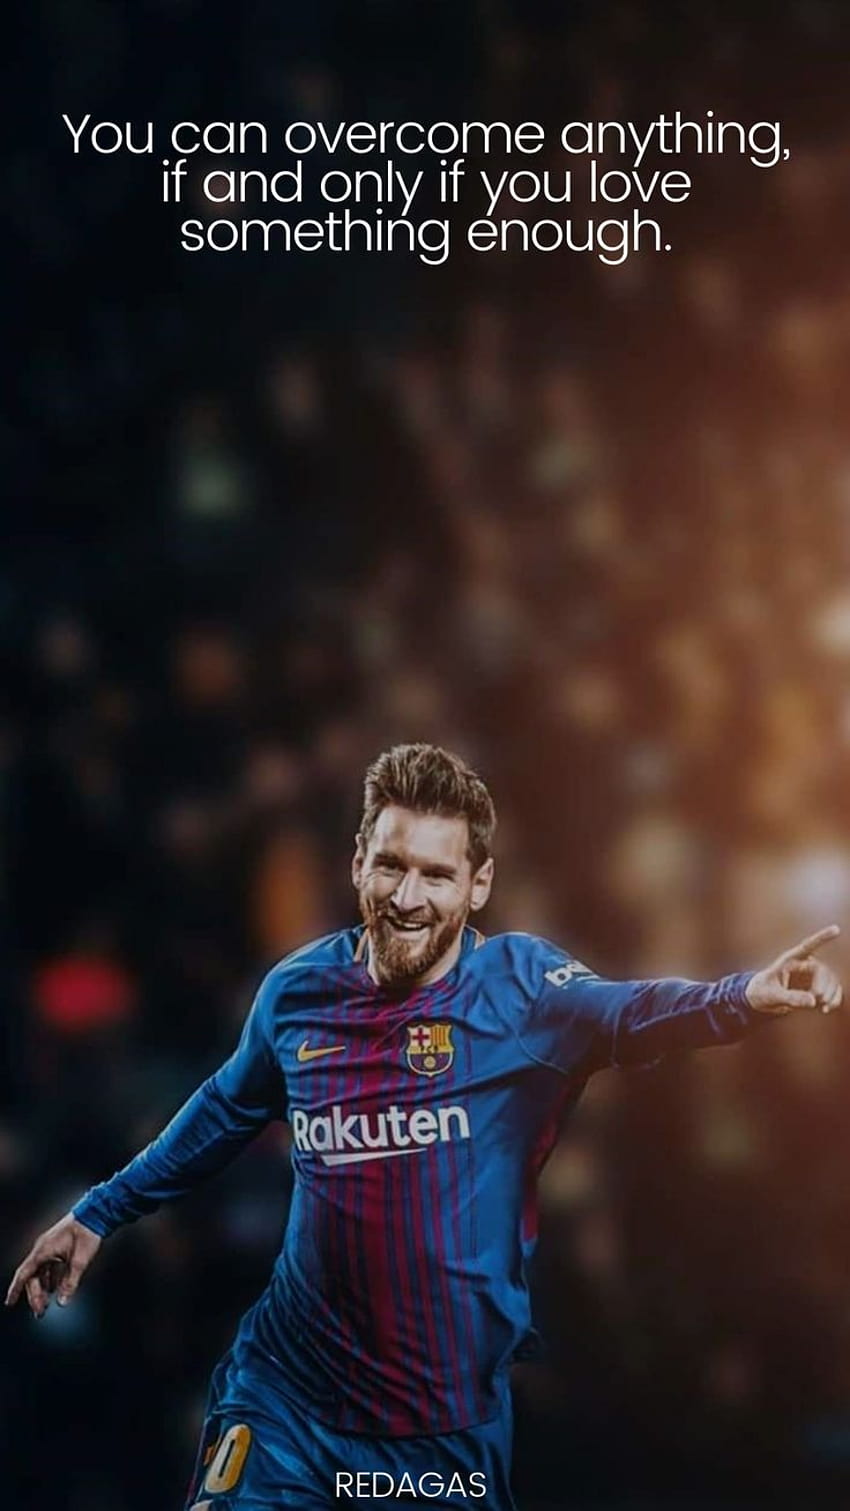 Nếu bạn yêu thích Messi và muốn trang trí điện thoại của mình với hình nền dành cho fan cuồng Messi, hãy xem ngay hàng loạt hình nền với câu nói của Messi trong đó.